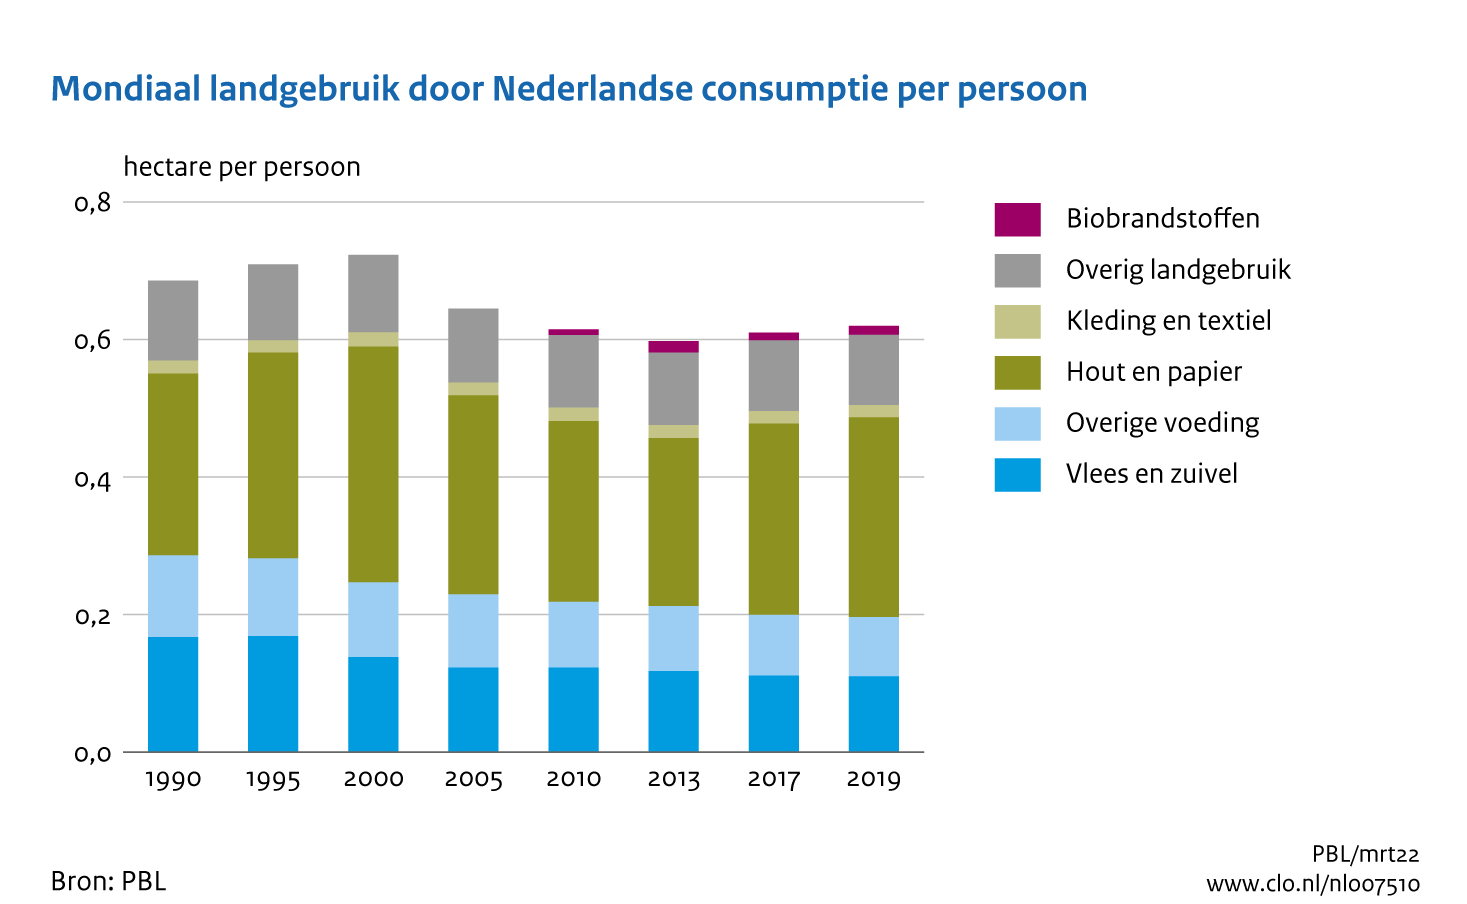 Figuur Landgebruik per persoon door Nederlandse consumptie . In de rest van de tekst wordt deze figuur uitgebreider uitgelegd.